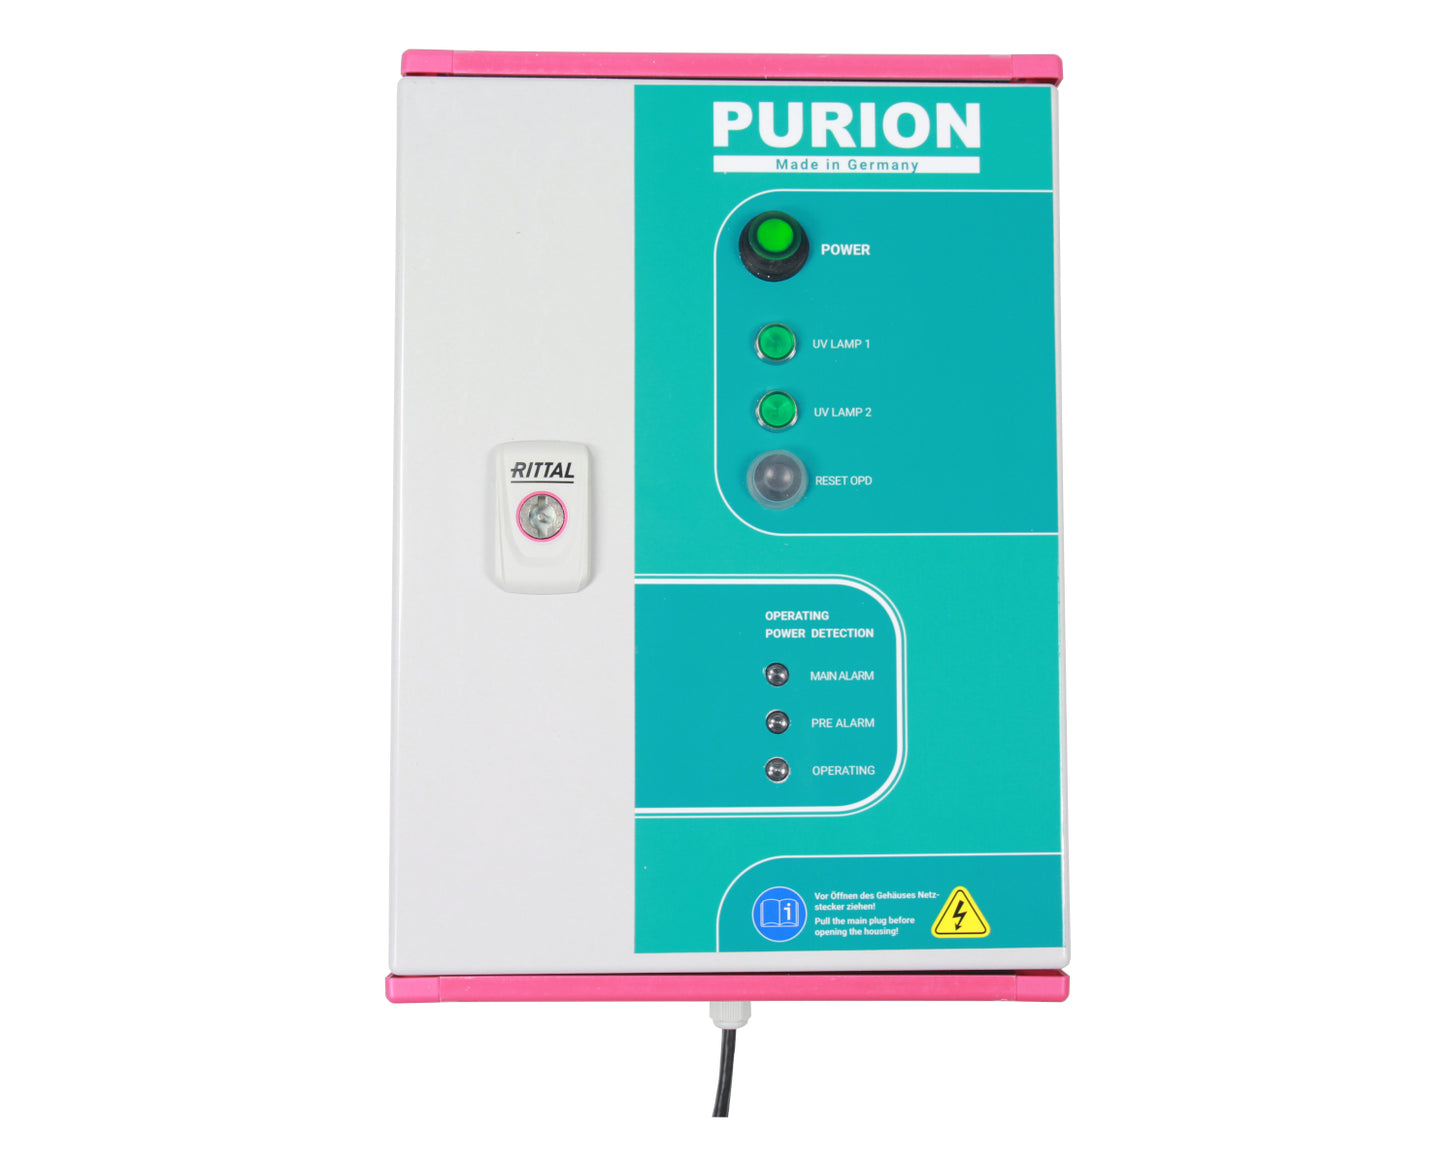 PURION 2500 H DUAL OPD, hergestellt von der PURION GmbH, nutzt die UV-C-Desinfektionstechnologie, um Legionellen effizient zu beseitigen und Energiekosten zu senken.